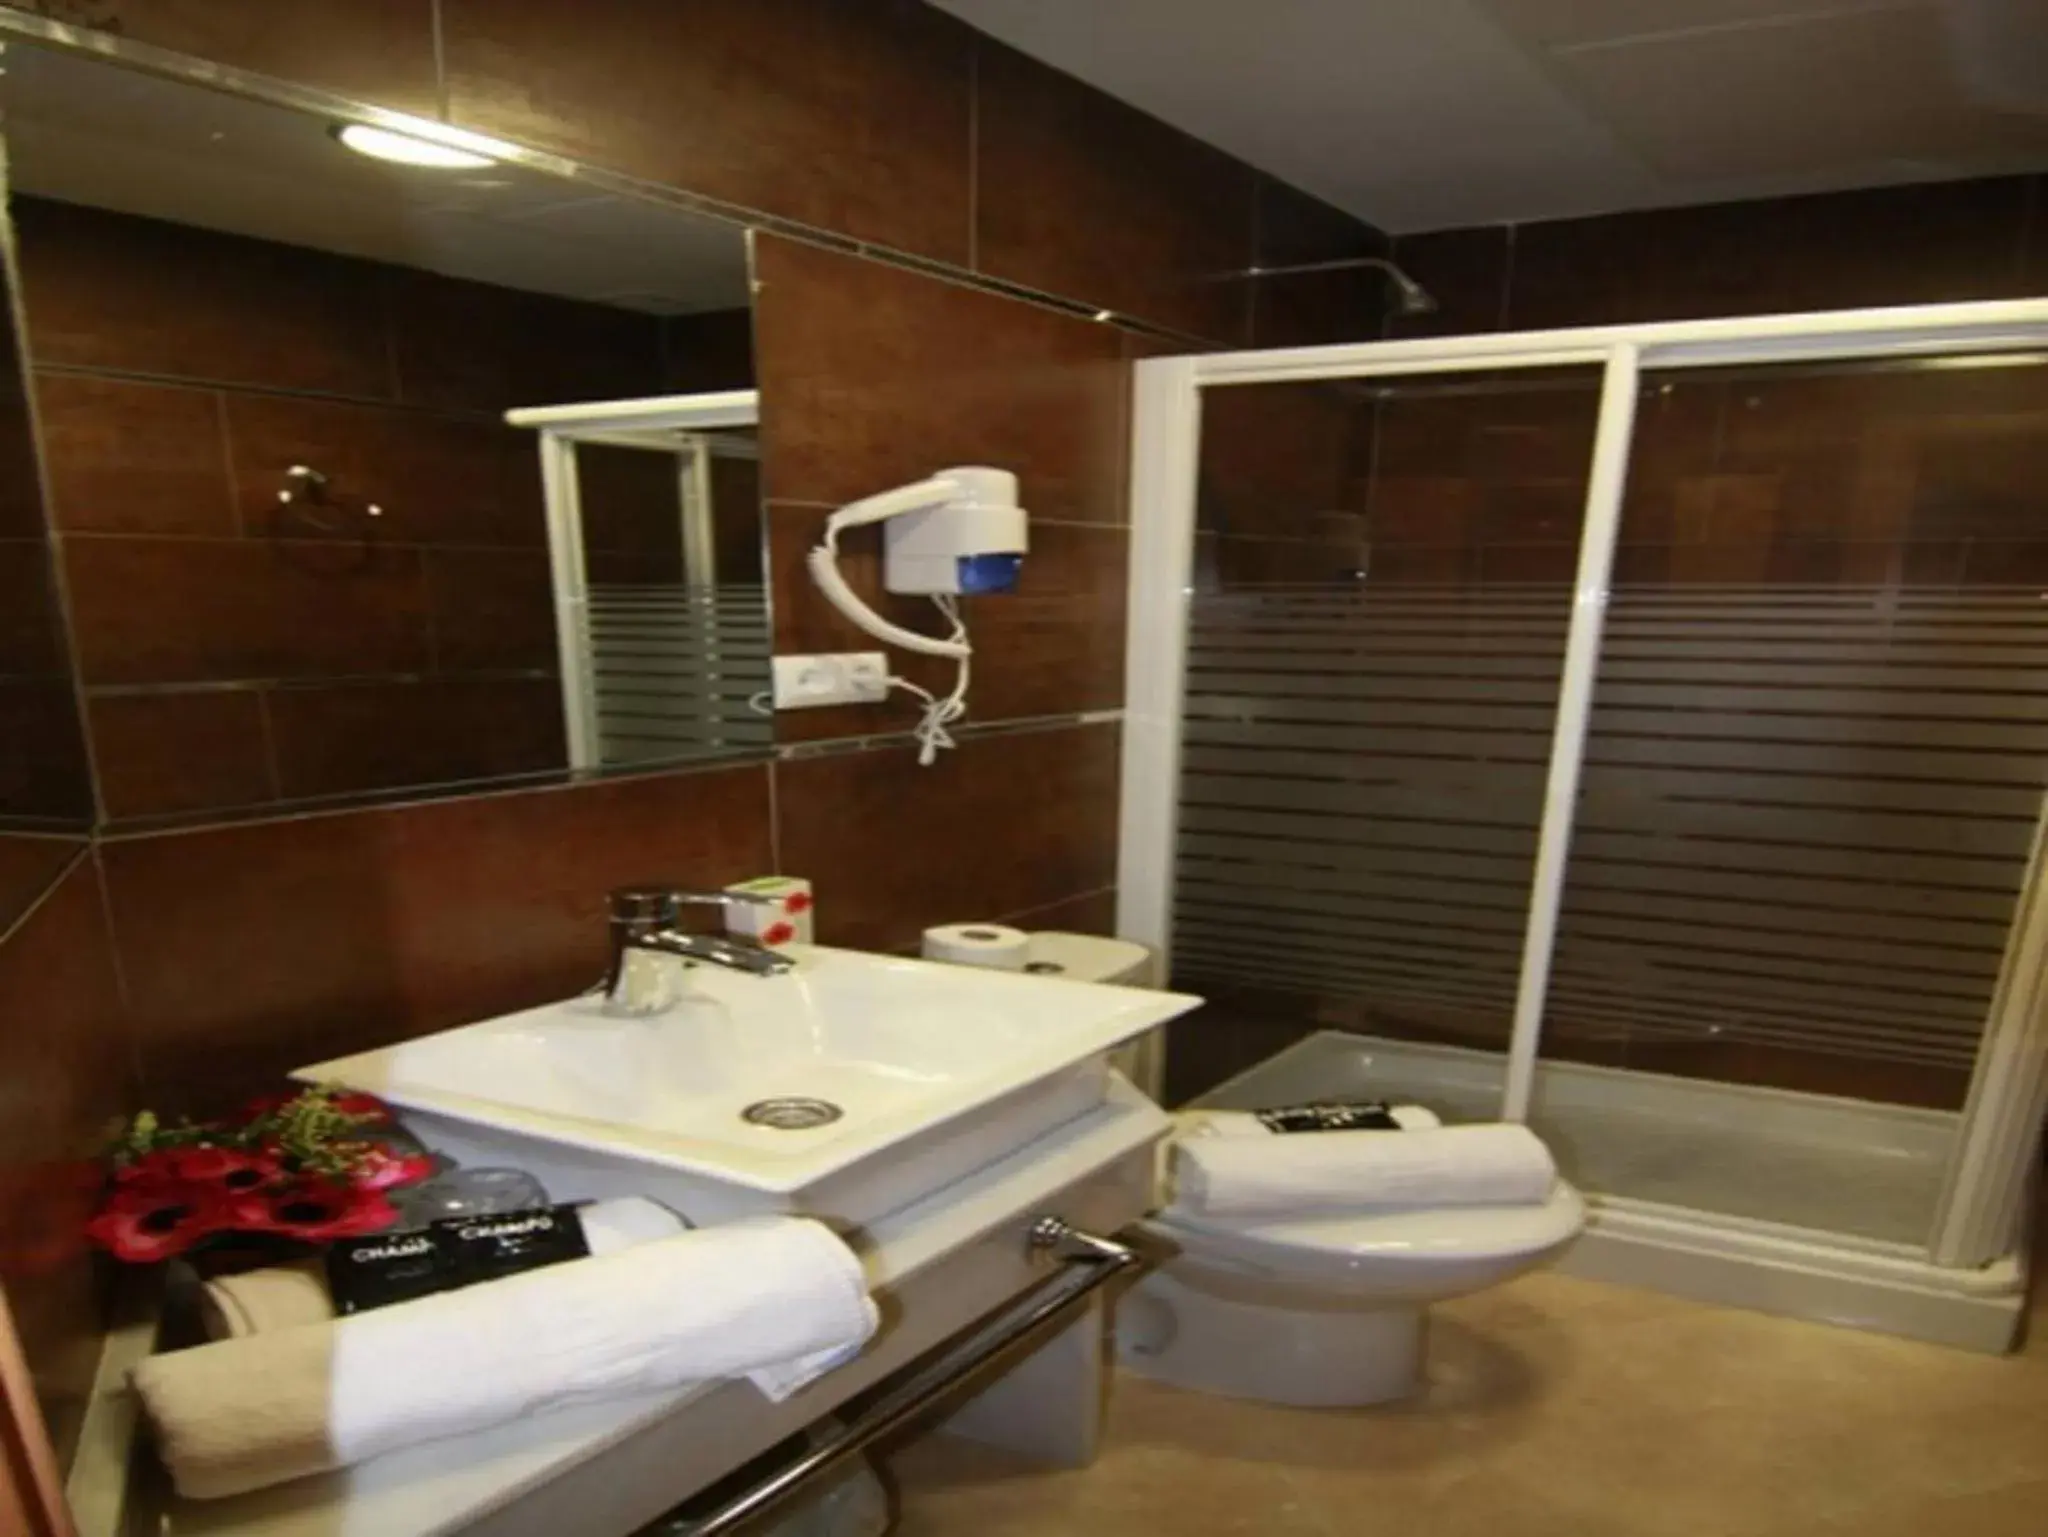 Bathroom in Hotel Duquesa